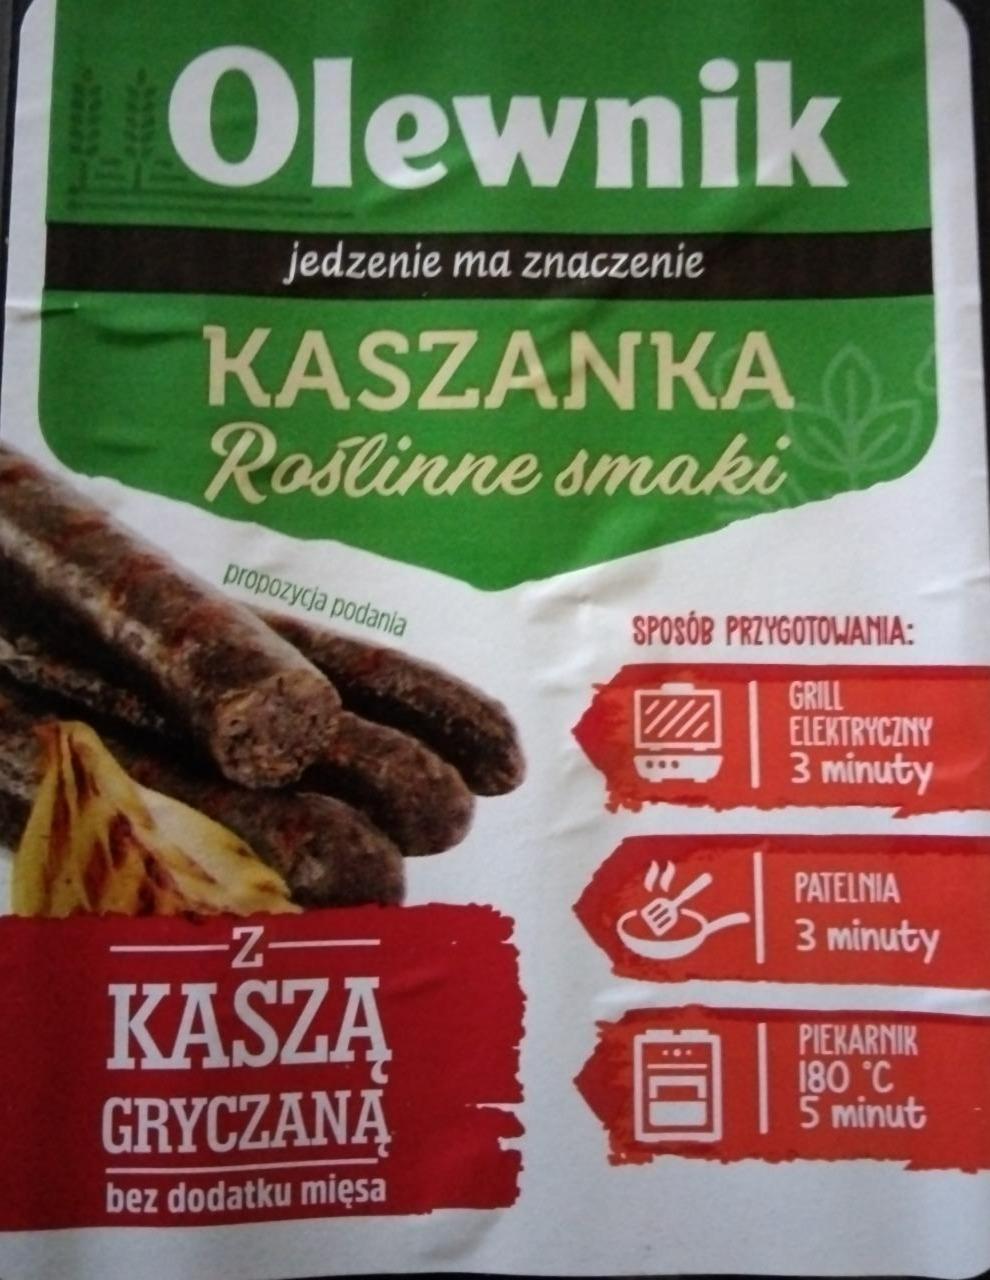 Fotografie - Kaszanka z kasza gryczana Roślinne smaki Olewnik